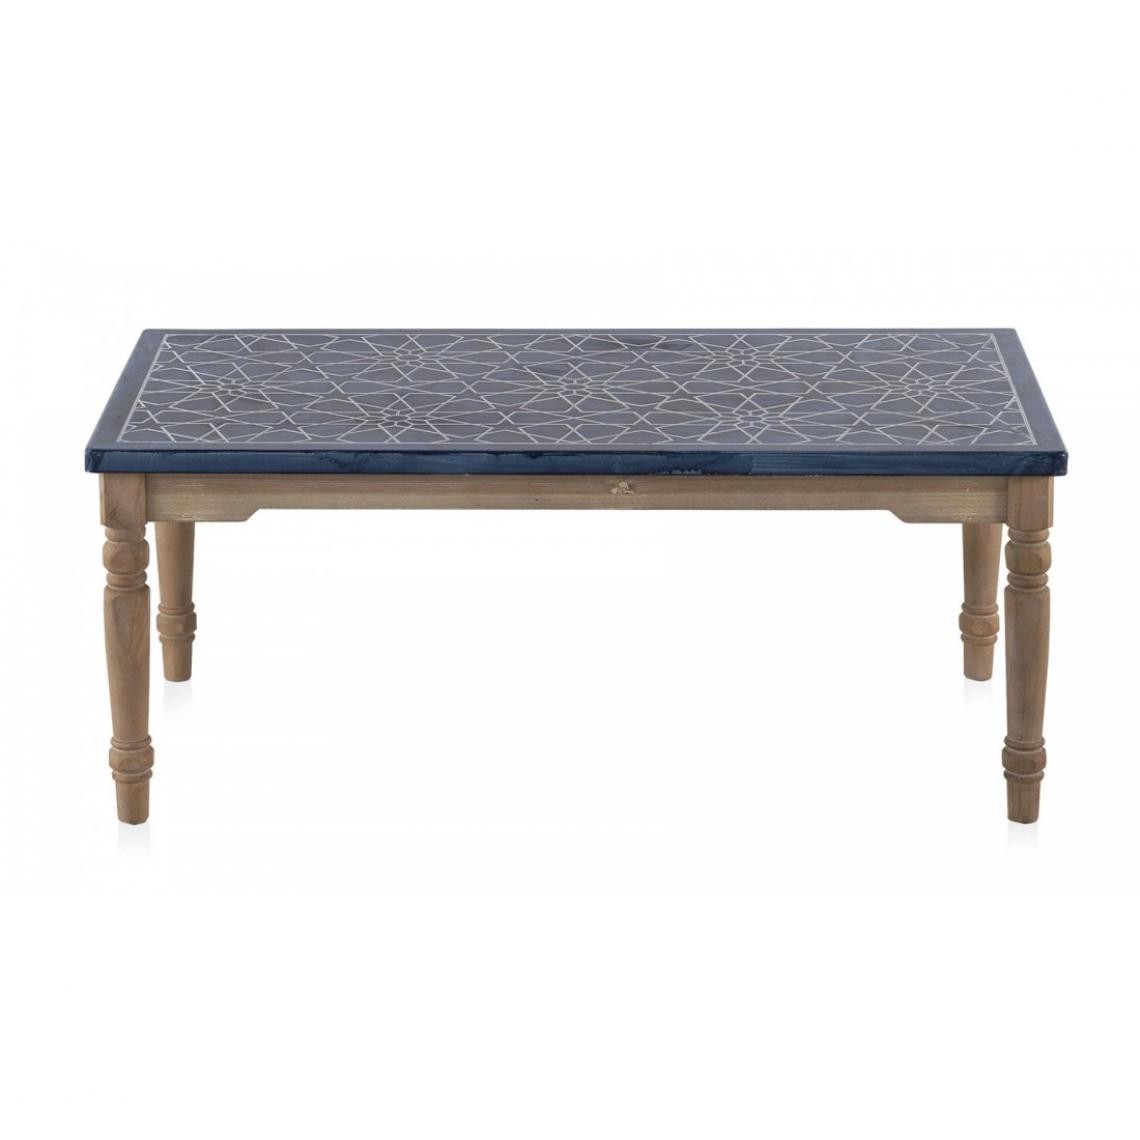 Pegane - Table basse en bois de sapin naturel et panneau MDF coloris bleu - Longueur 110 x Hauteur 45 x Largeur 60 cm - Tables basses